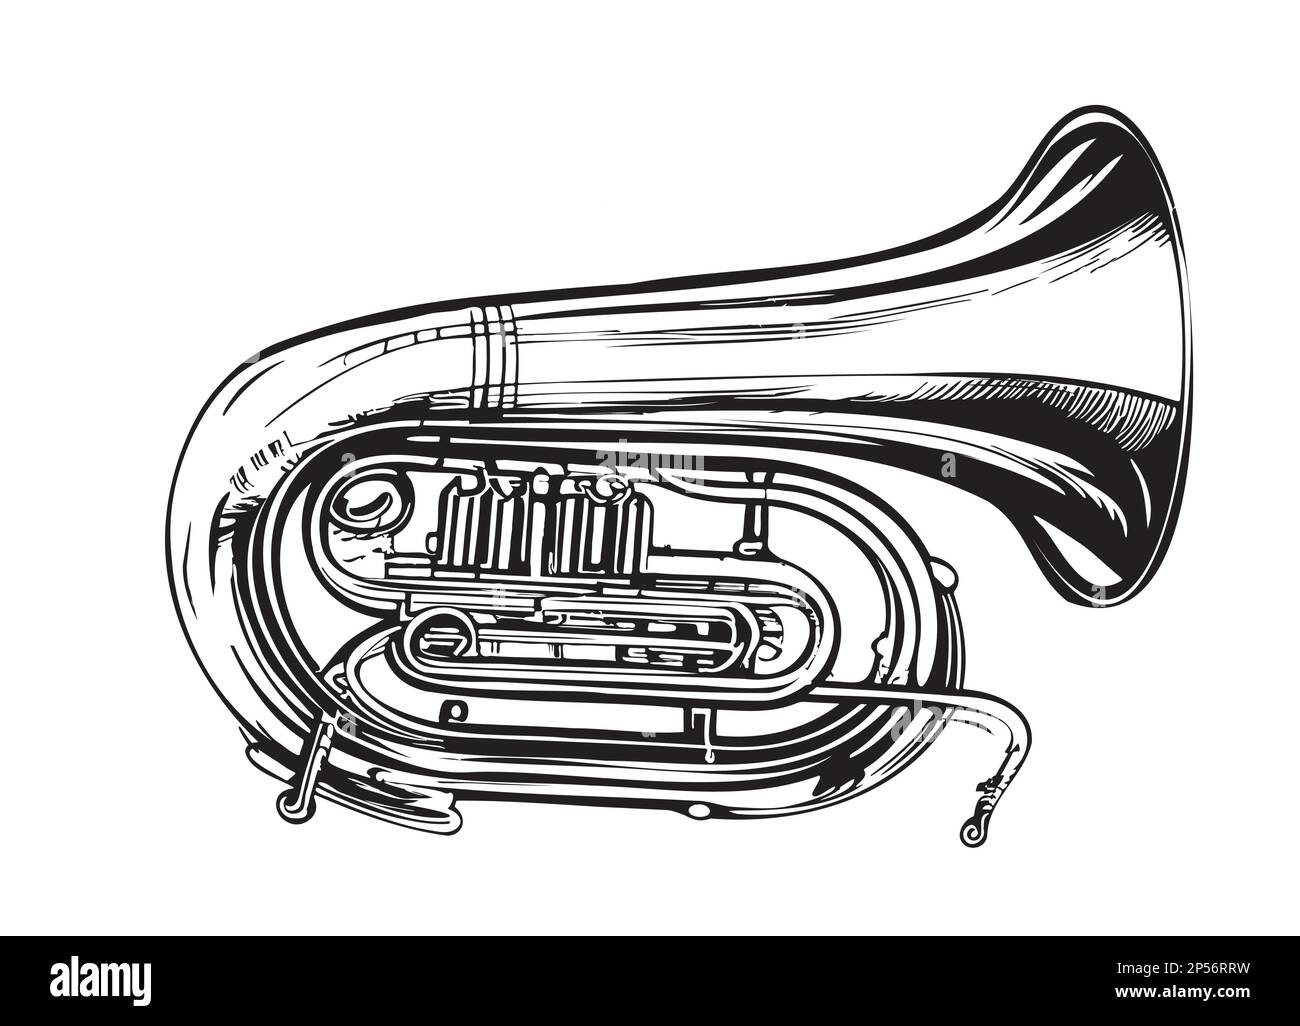 Tuba musikinstrument Schwarzweiß-Stockfotos und -bilder - Alamy